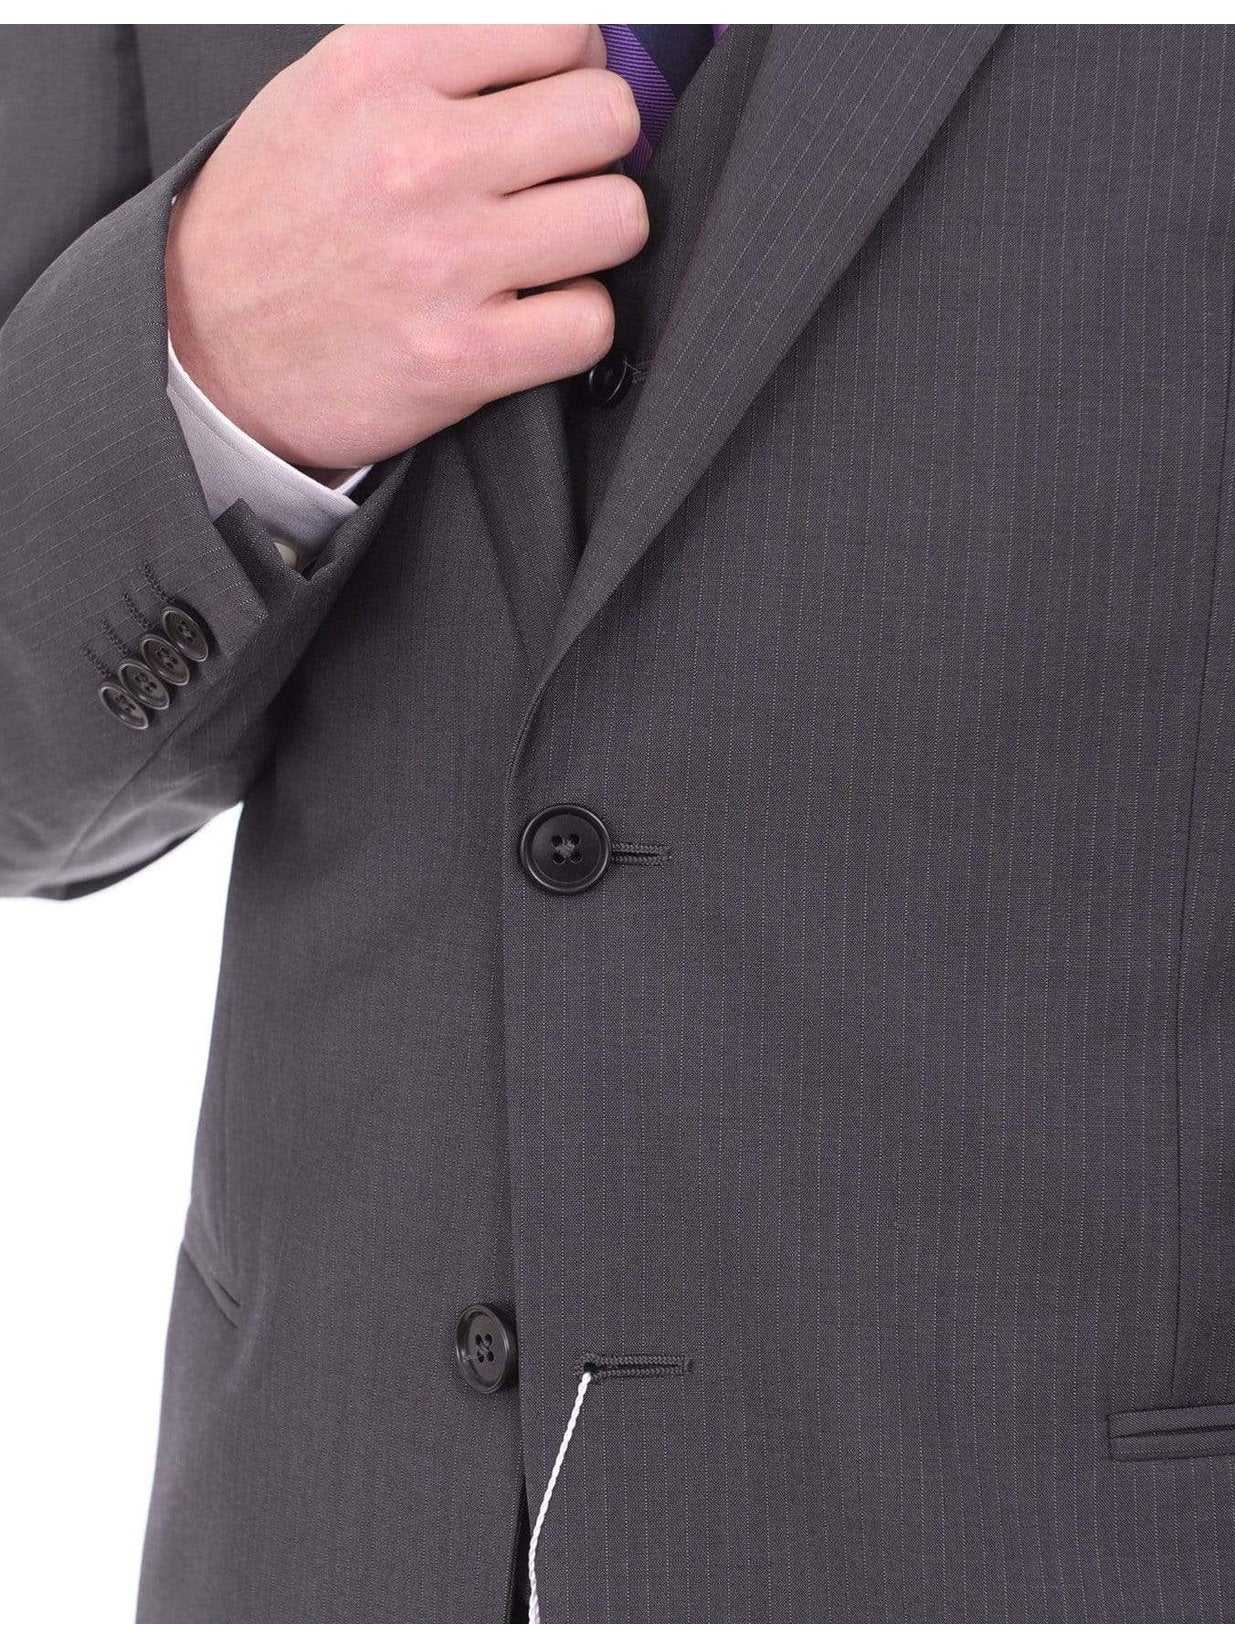 Armani Collezioni THREE PIECE SUITS Armani Collezioni Giorgio Slim Fit 46r 58 Gray Striped Three Piece Wool Suit